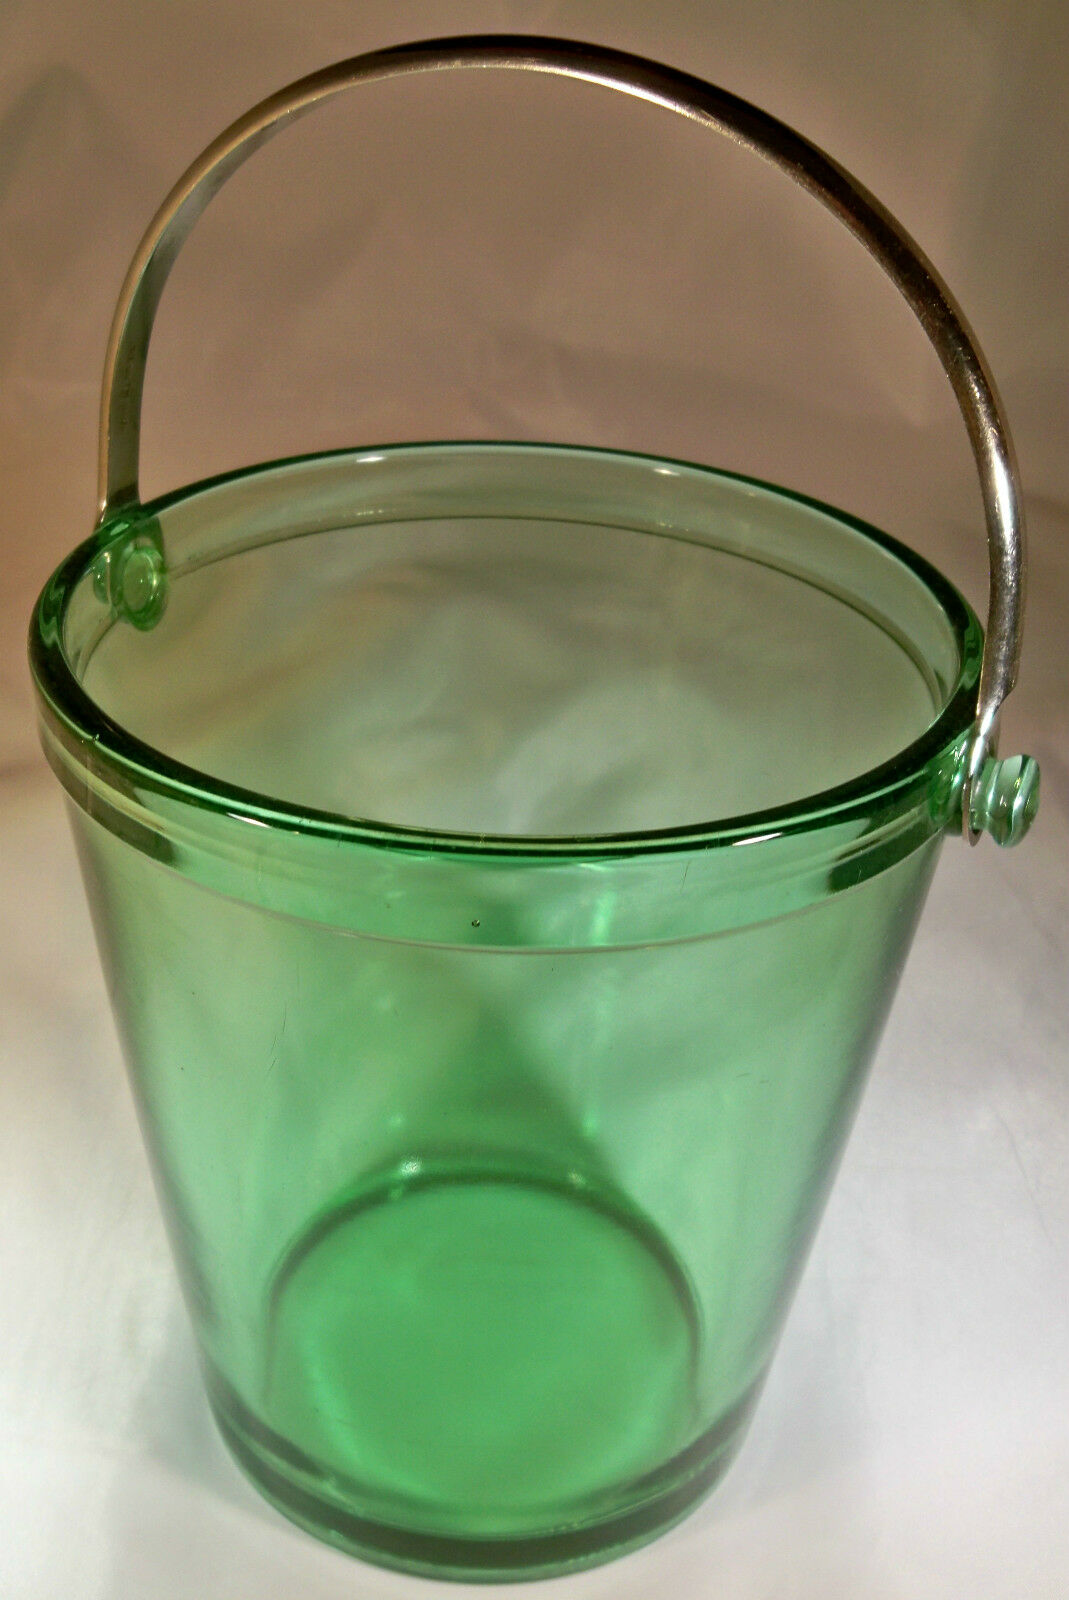 Fostoria Fairfax Green #2375 6-inch Tall Ice Bucket With Metal Handle!